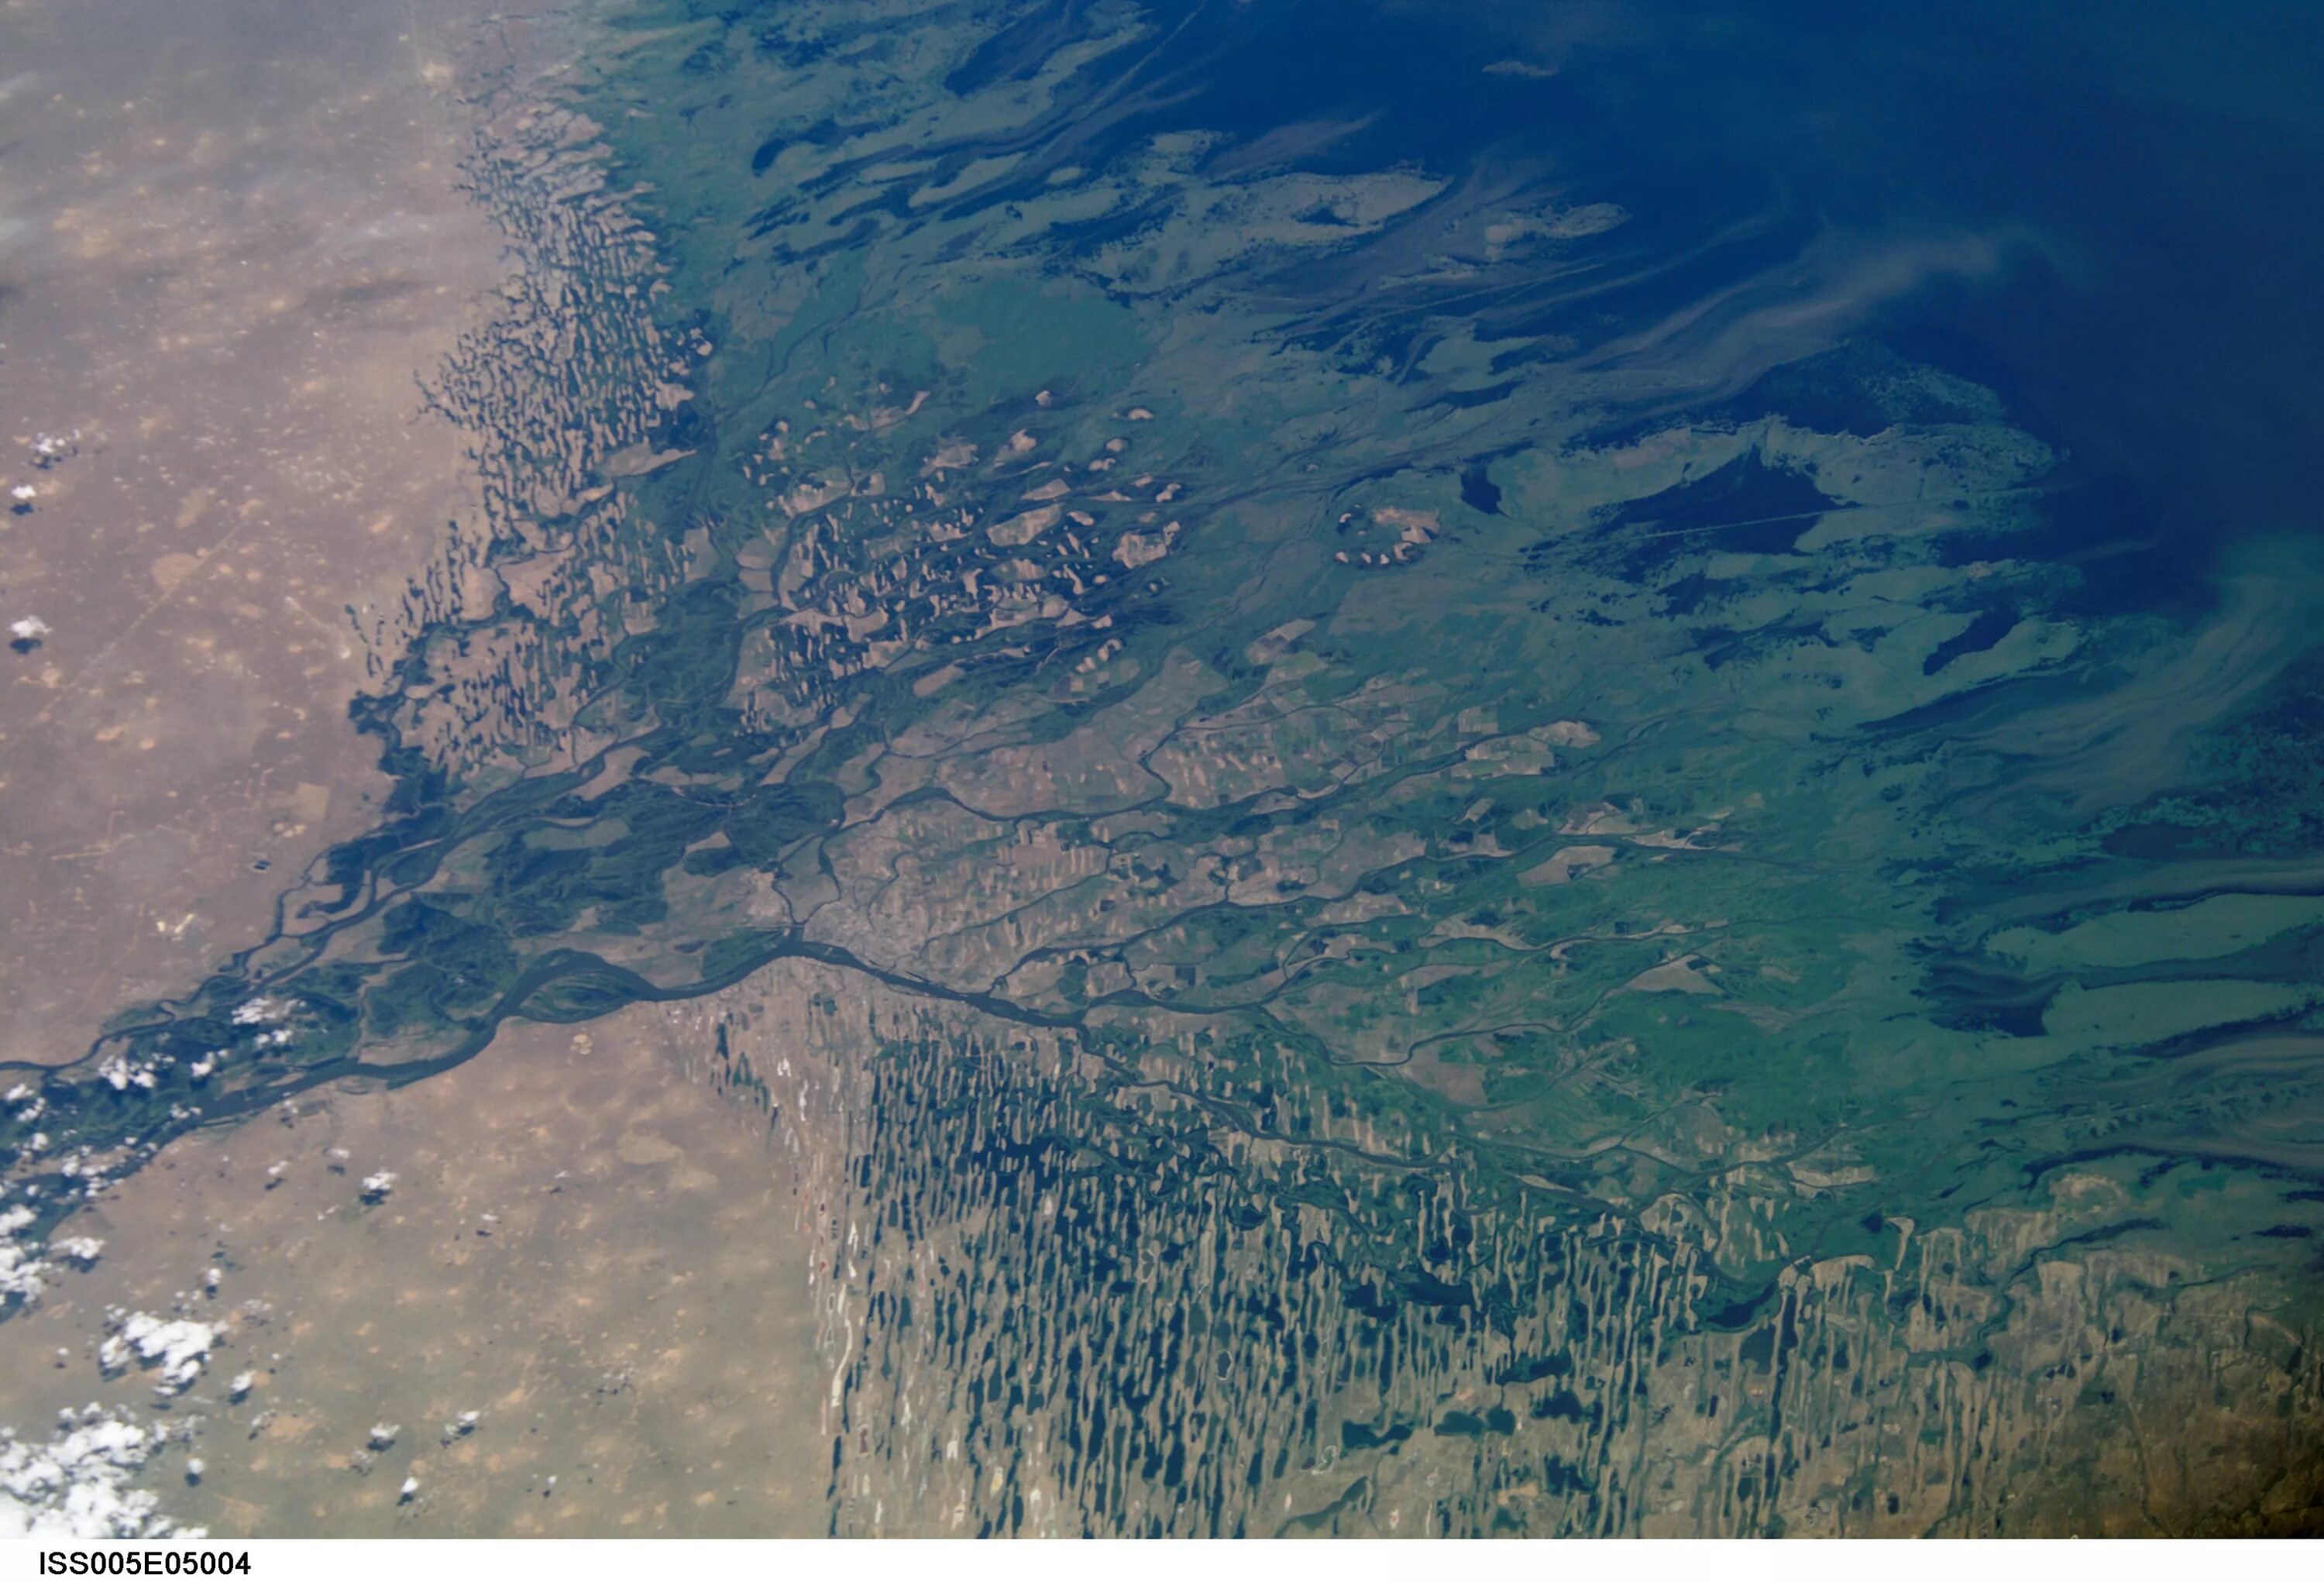 Река лена впадает в волгу. Каспийское море Дельта Волги. Дельта реки Волги из космоса. Дельта реки Астрахань. Прикаспийская низменность Дельта Волги.